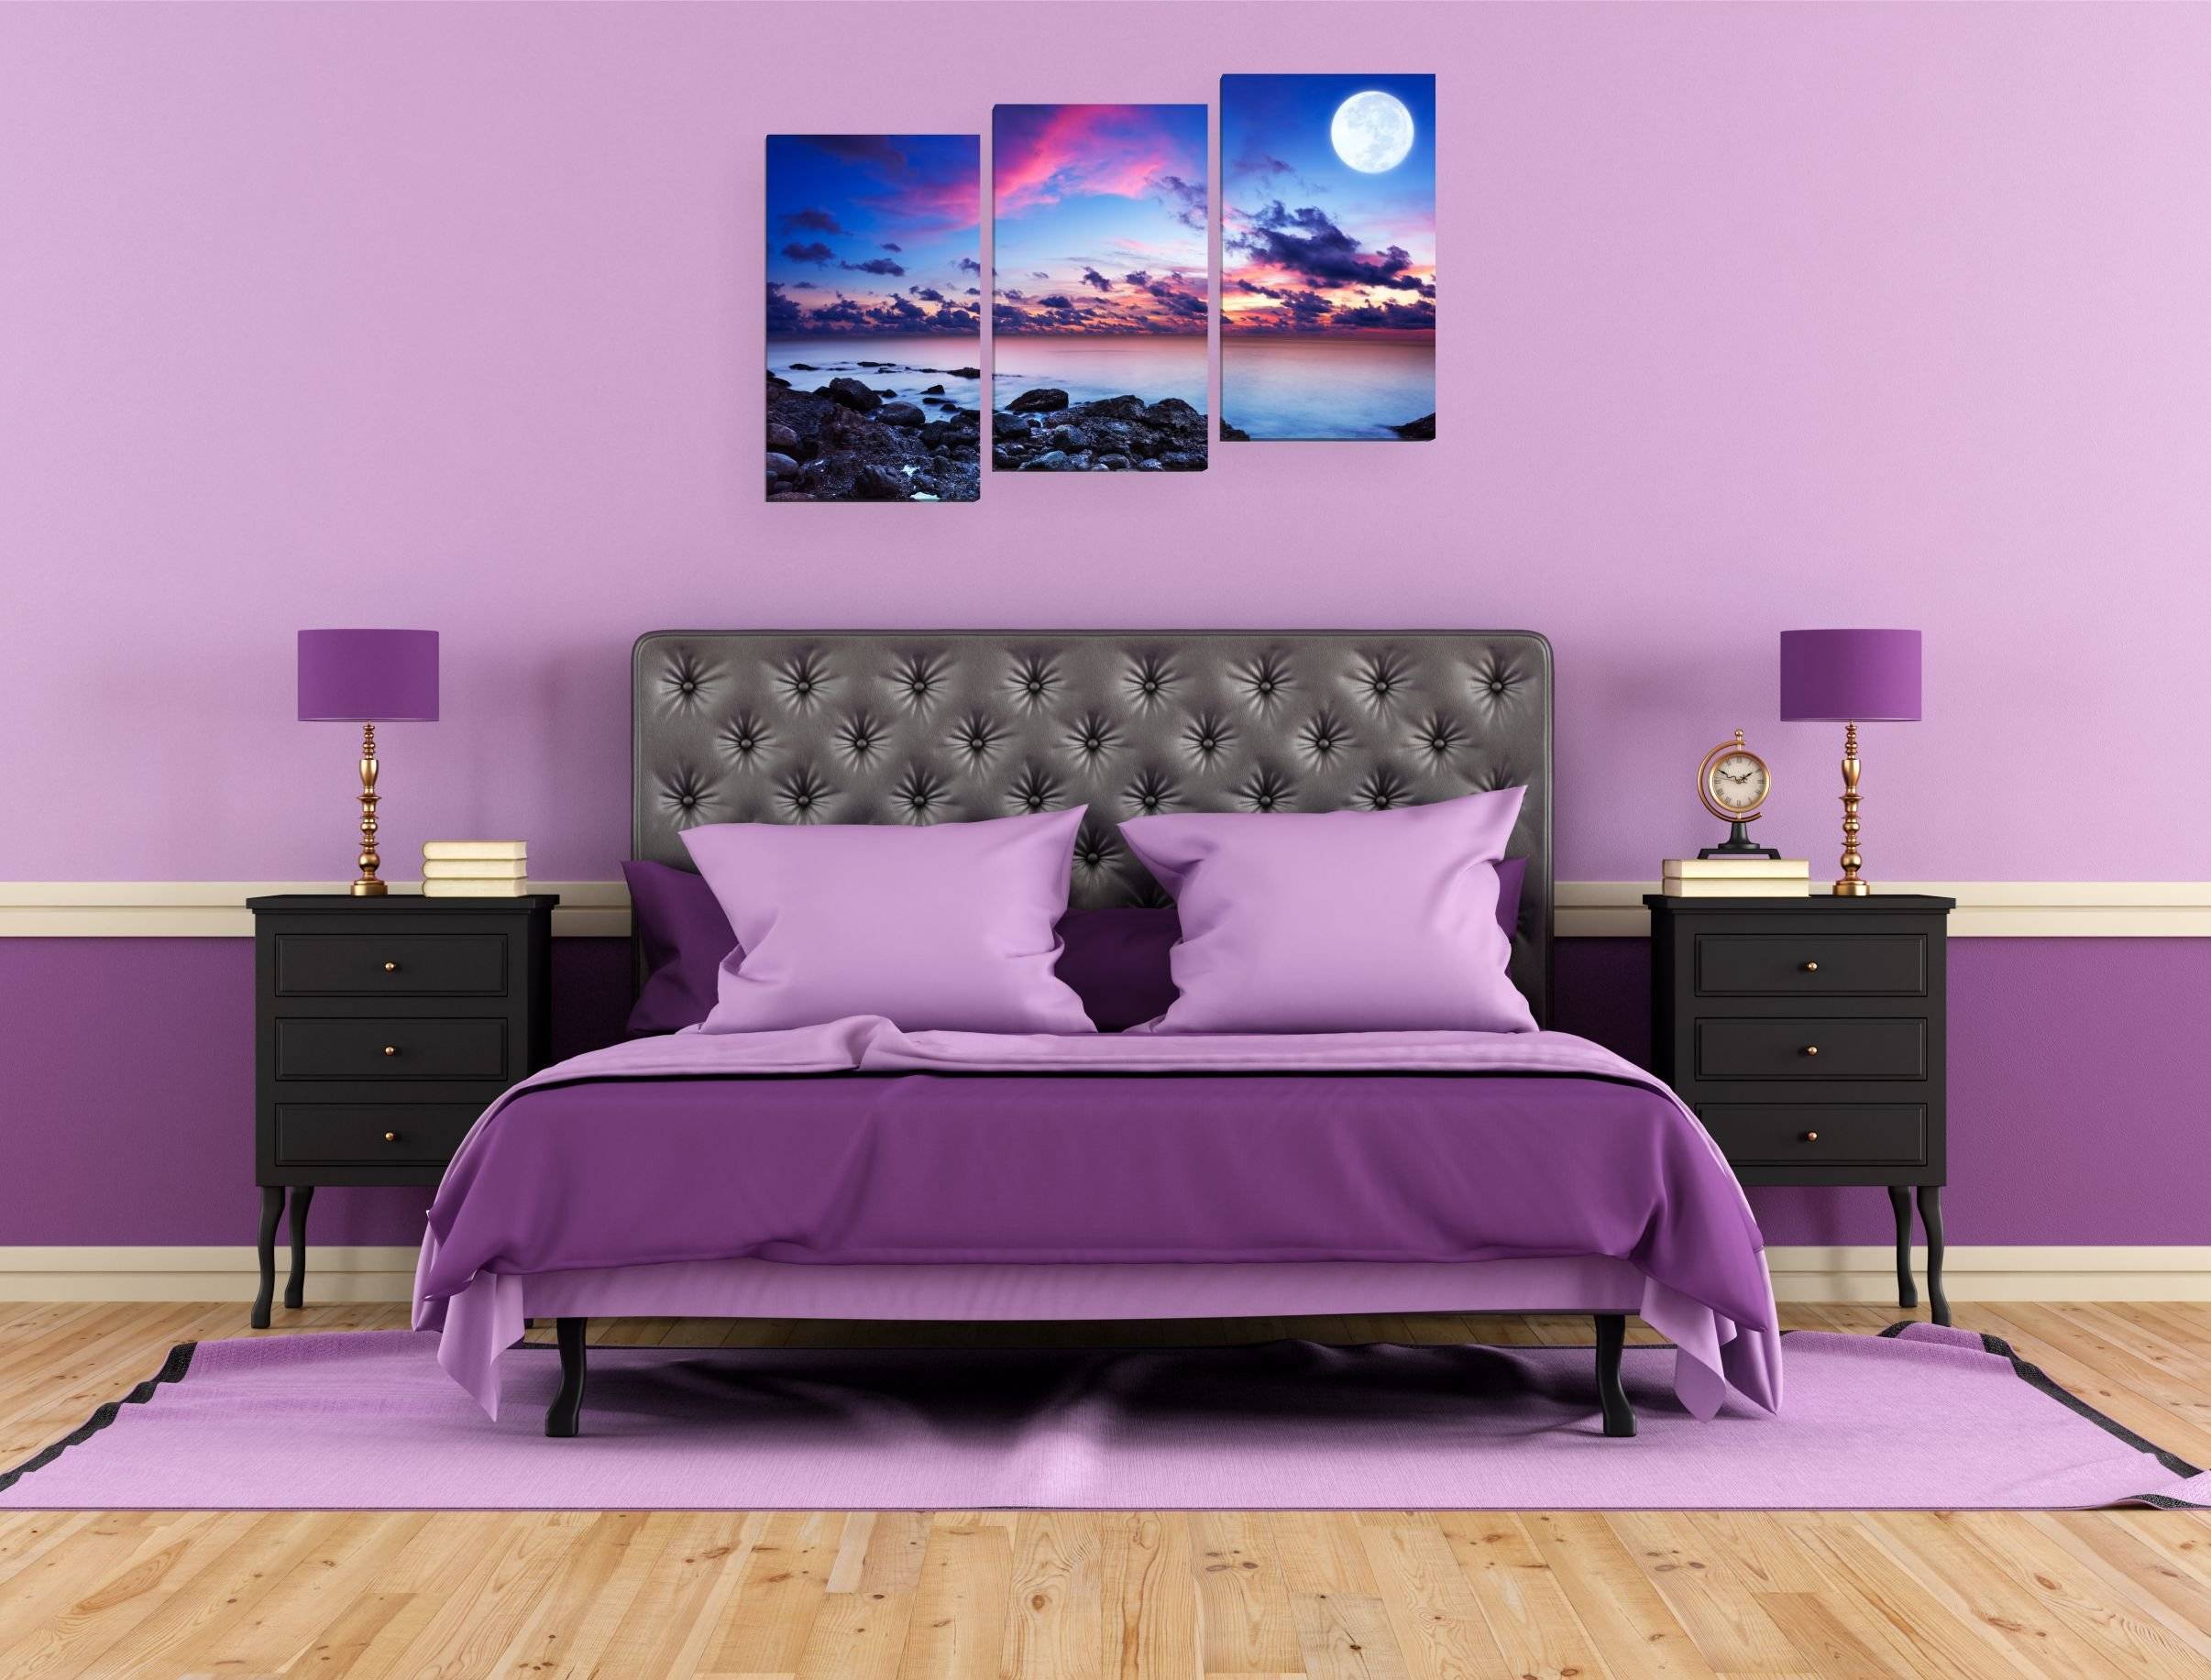 2021 ᐈ ???? (+76 фото) фиолетовый диван в интерьере